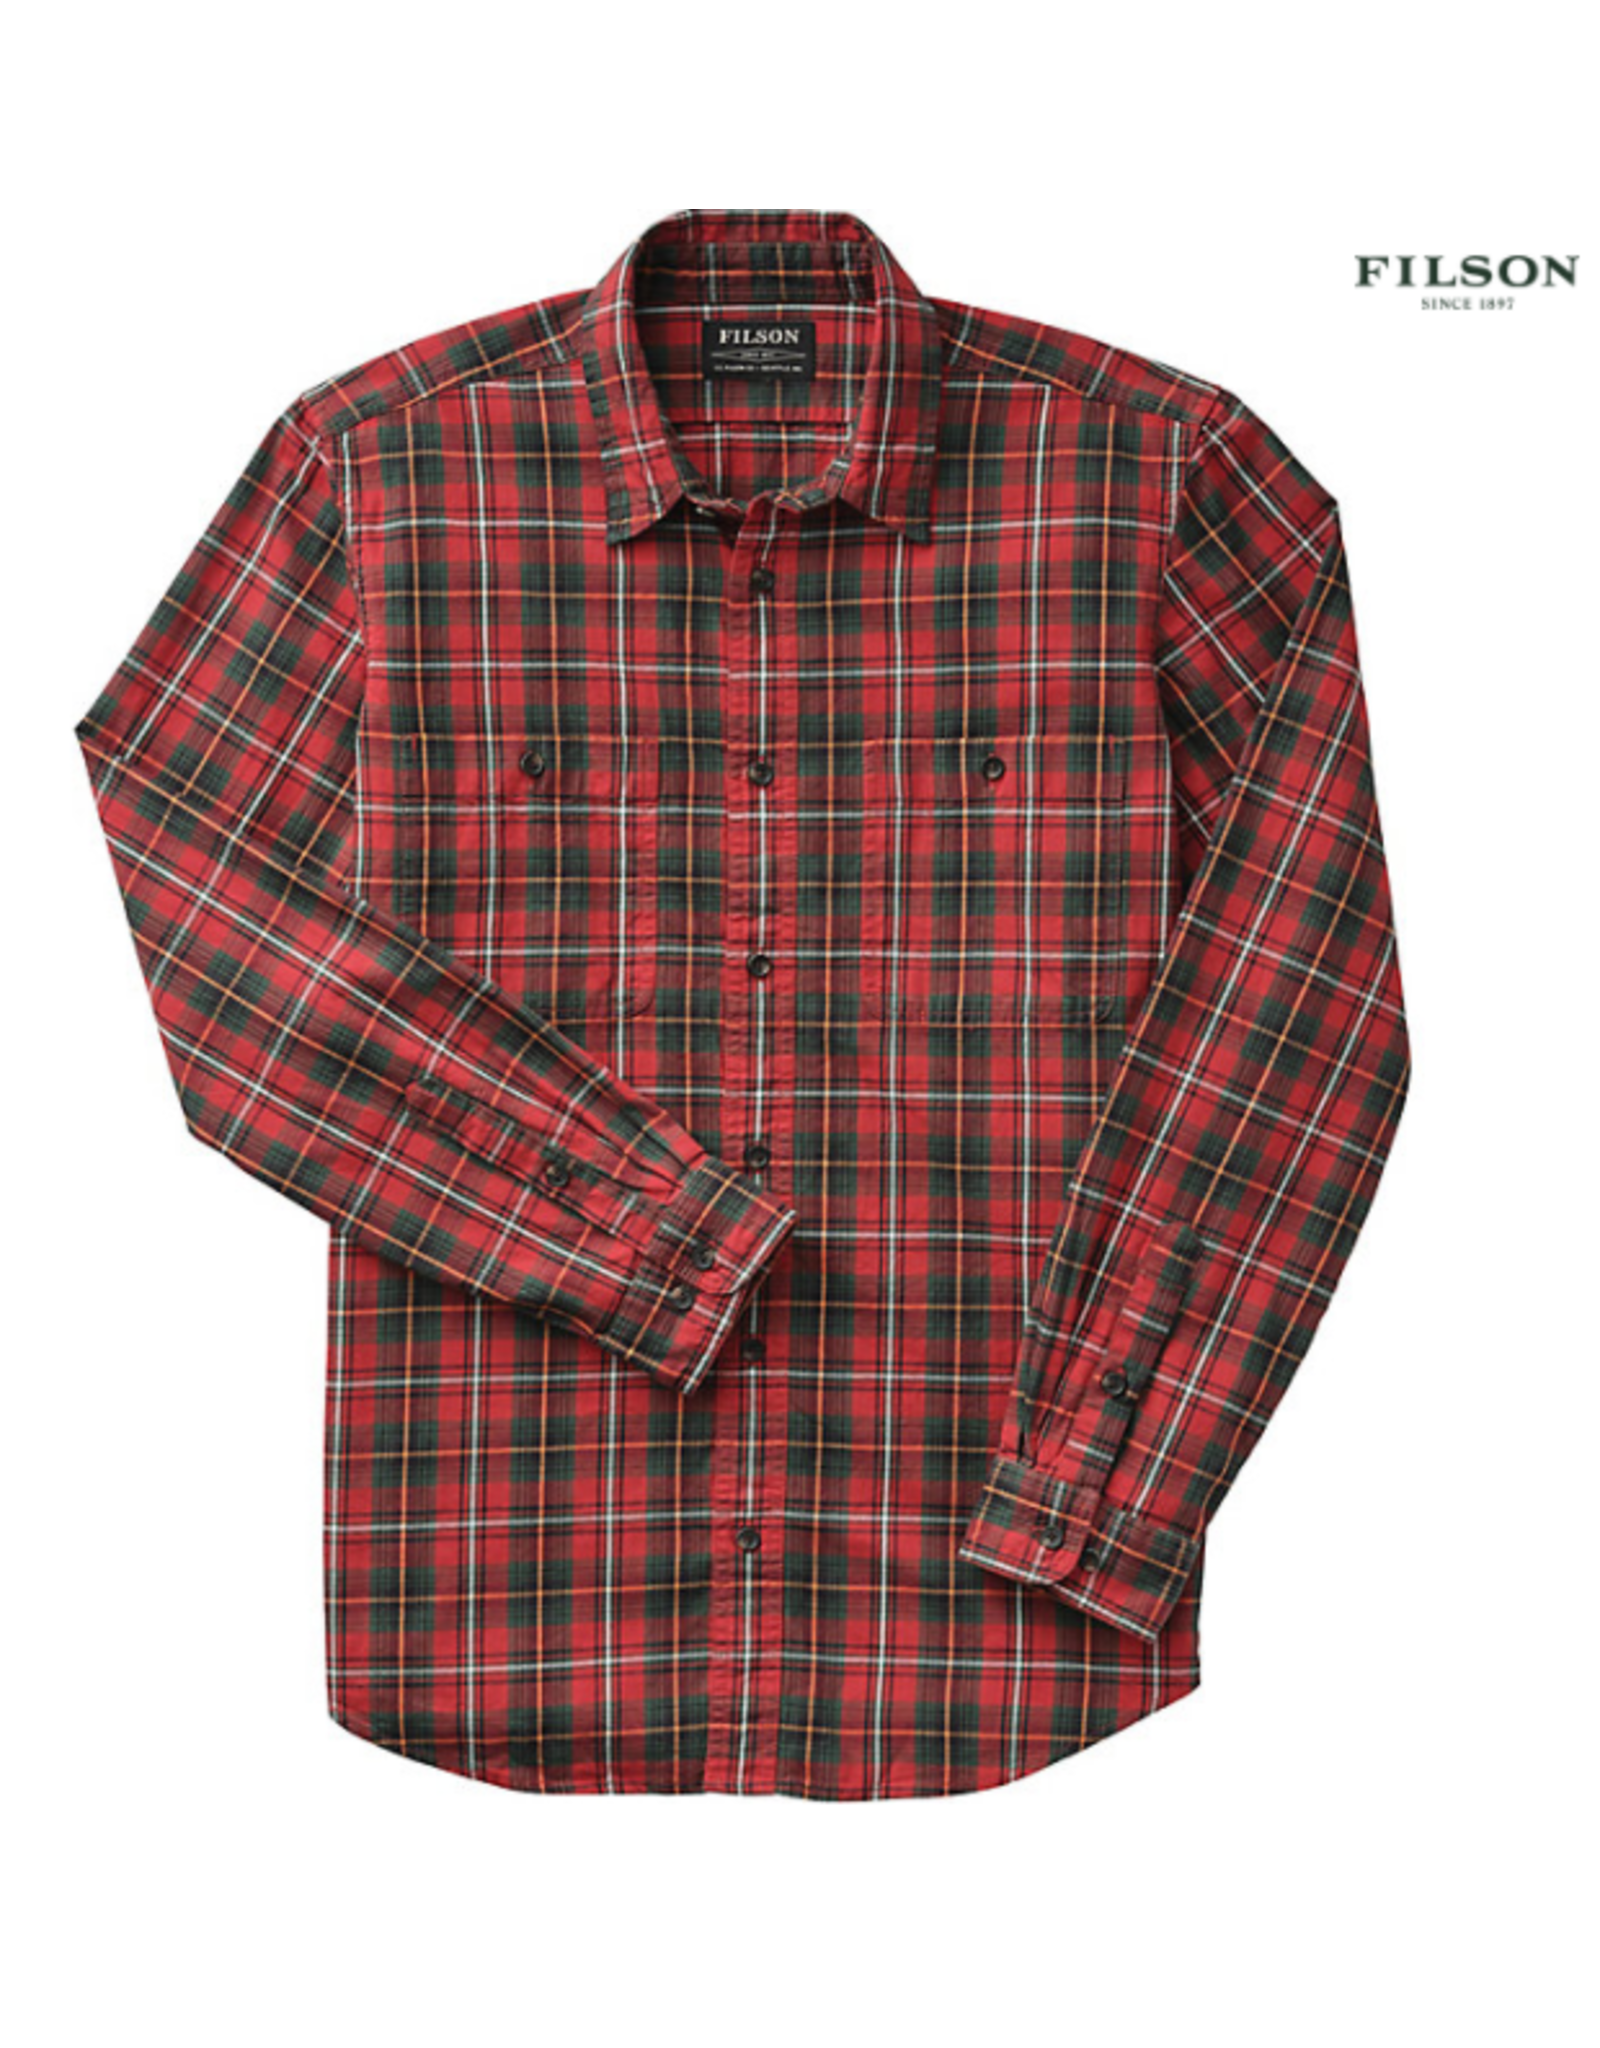 Filson Filson Wildwood Shirt